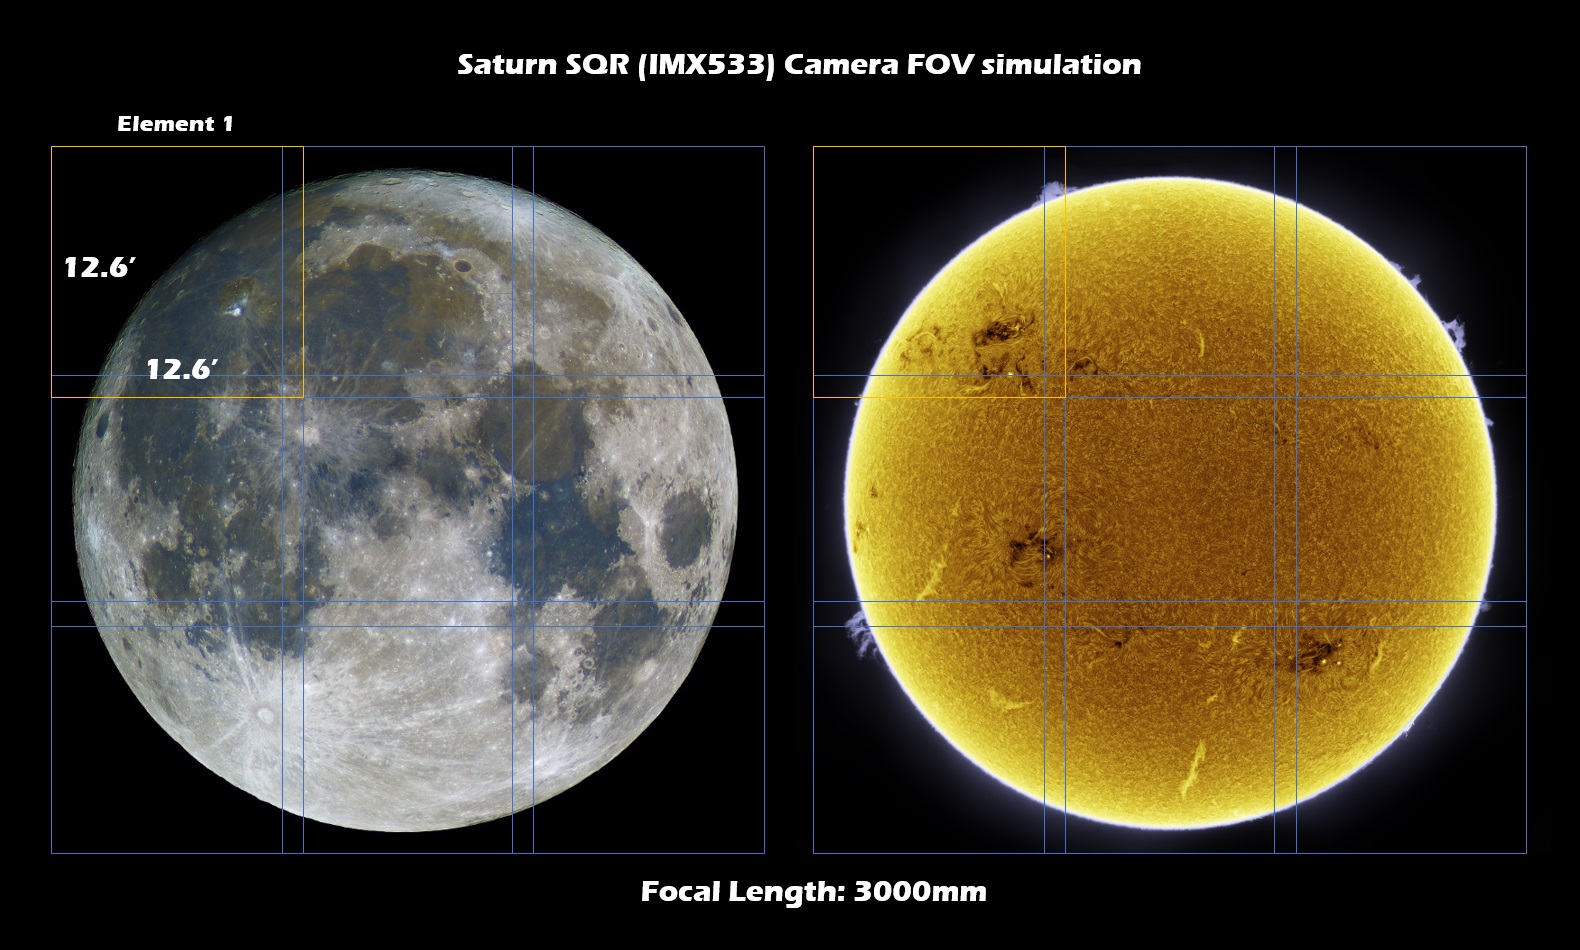 Saturn-SQR-simulation-FL3000mm.jpg (1580×950)